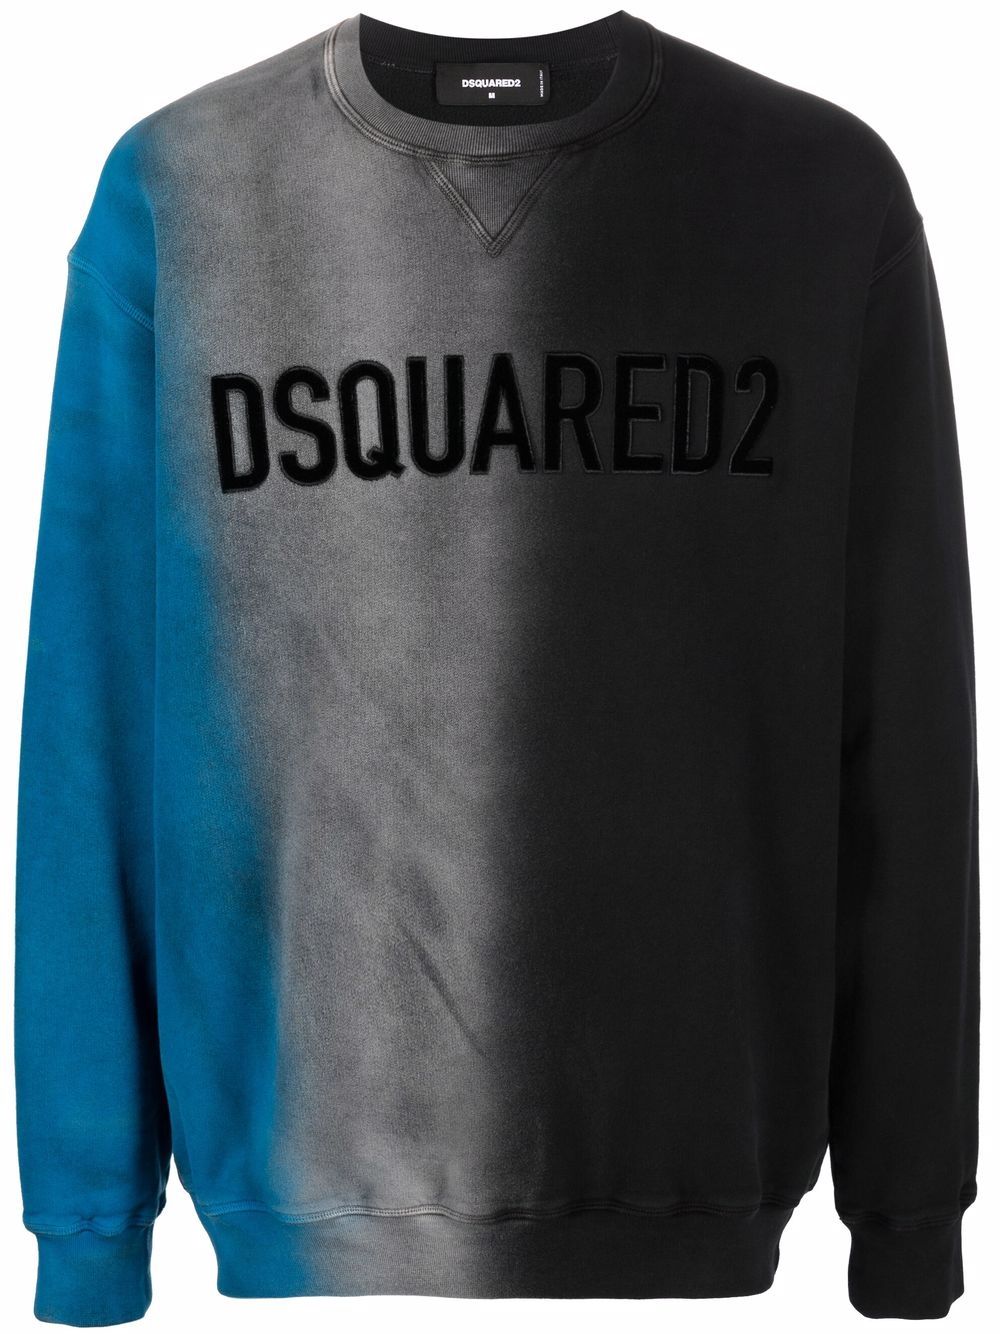 Dsquared2 Sweatshirt in Colour-Block-Optik - Blau von Dsquared2